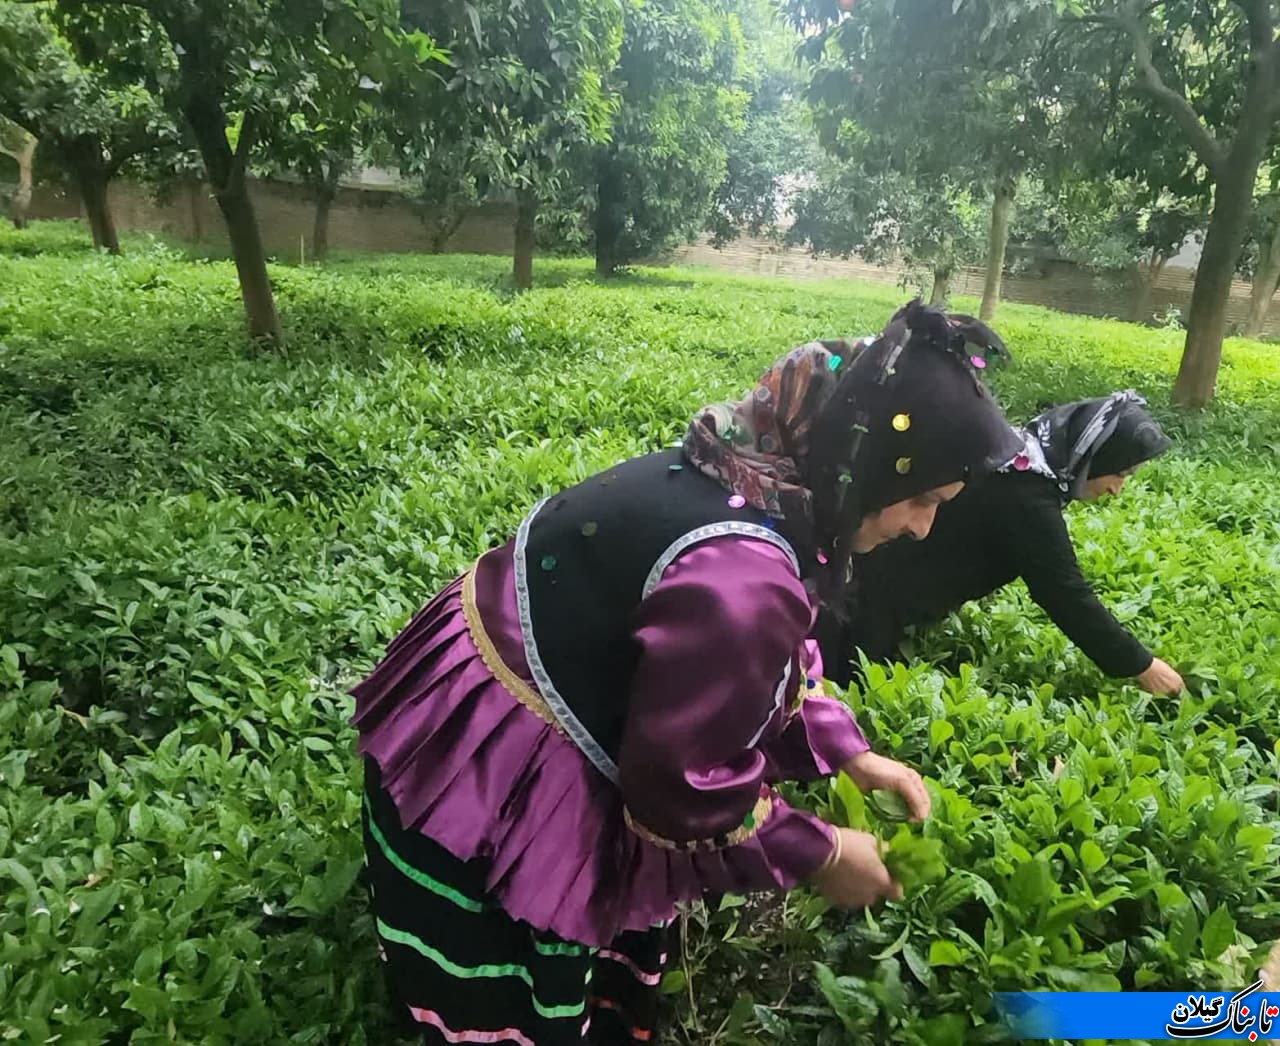 برداشت برگ سبز چای در گیلان با حضور نماینده عالی دولت در گیلان آغاز شد که پیش بینی می شود ۳۰ هزار تن برگ سبز چای در این استان تولید شود.